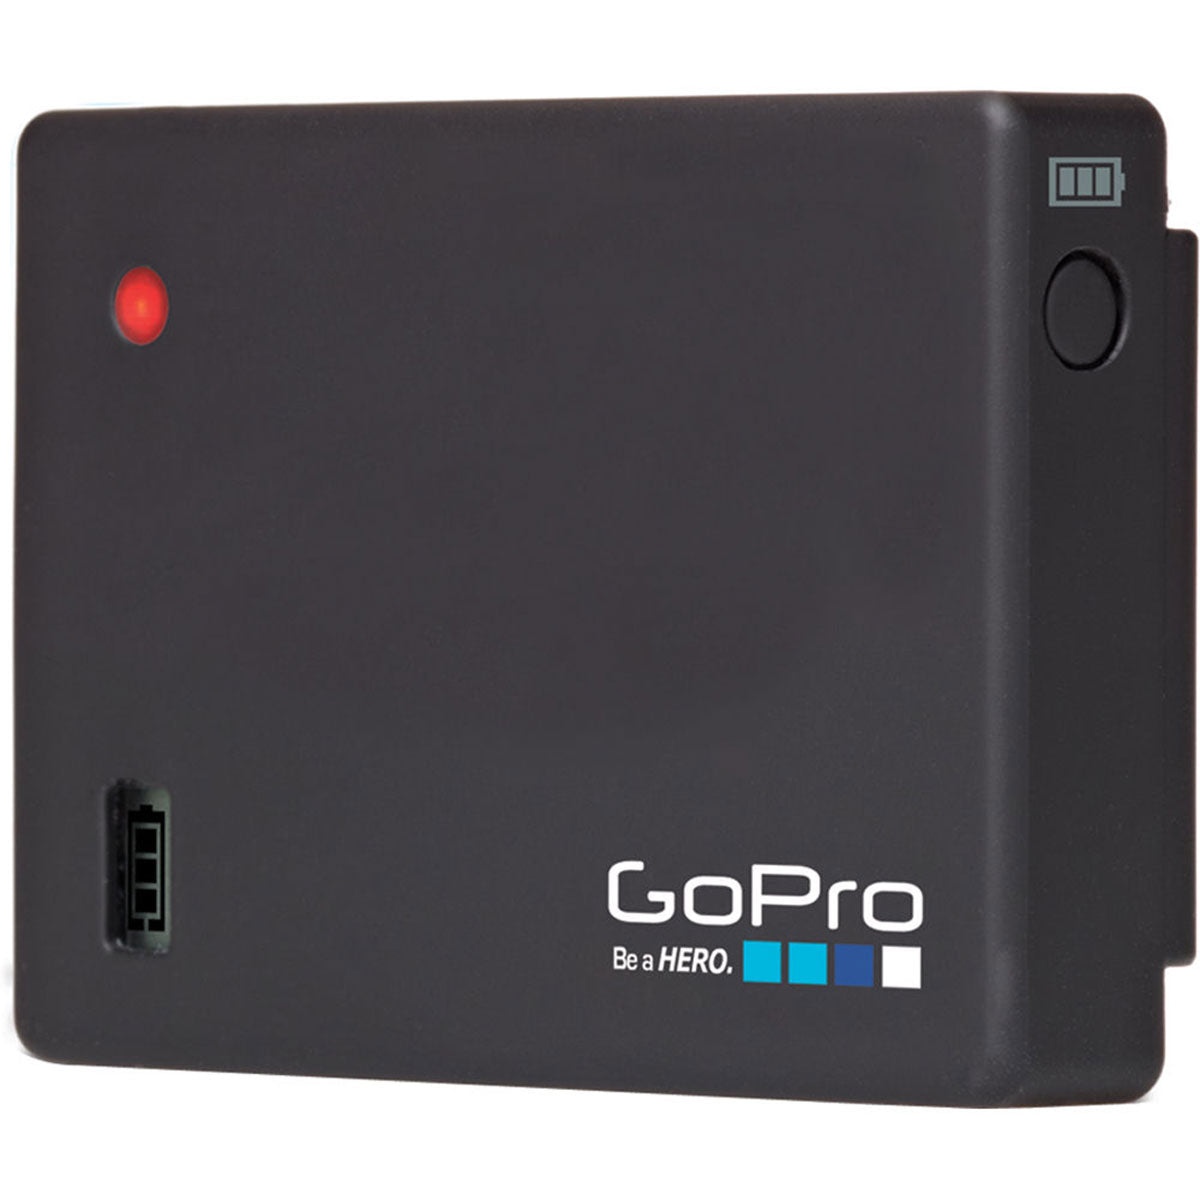 Gopro battery. Внешняя батарея для Hero 3/3+/4 GOPRO. Аккумулятор GOPRO Hero. Внешний аккумулятор GOPRO 4. Доп аккумулятор для гопро 4.